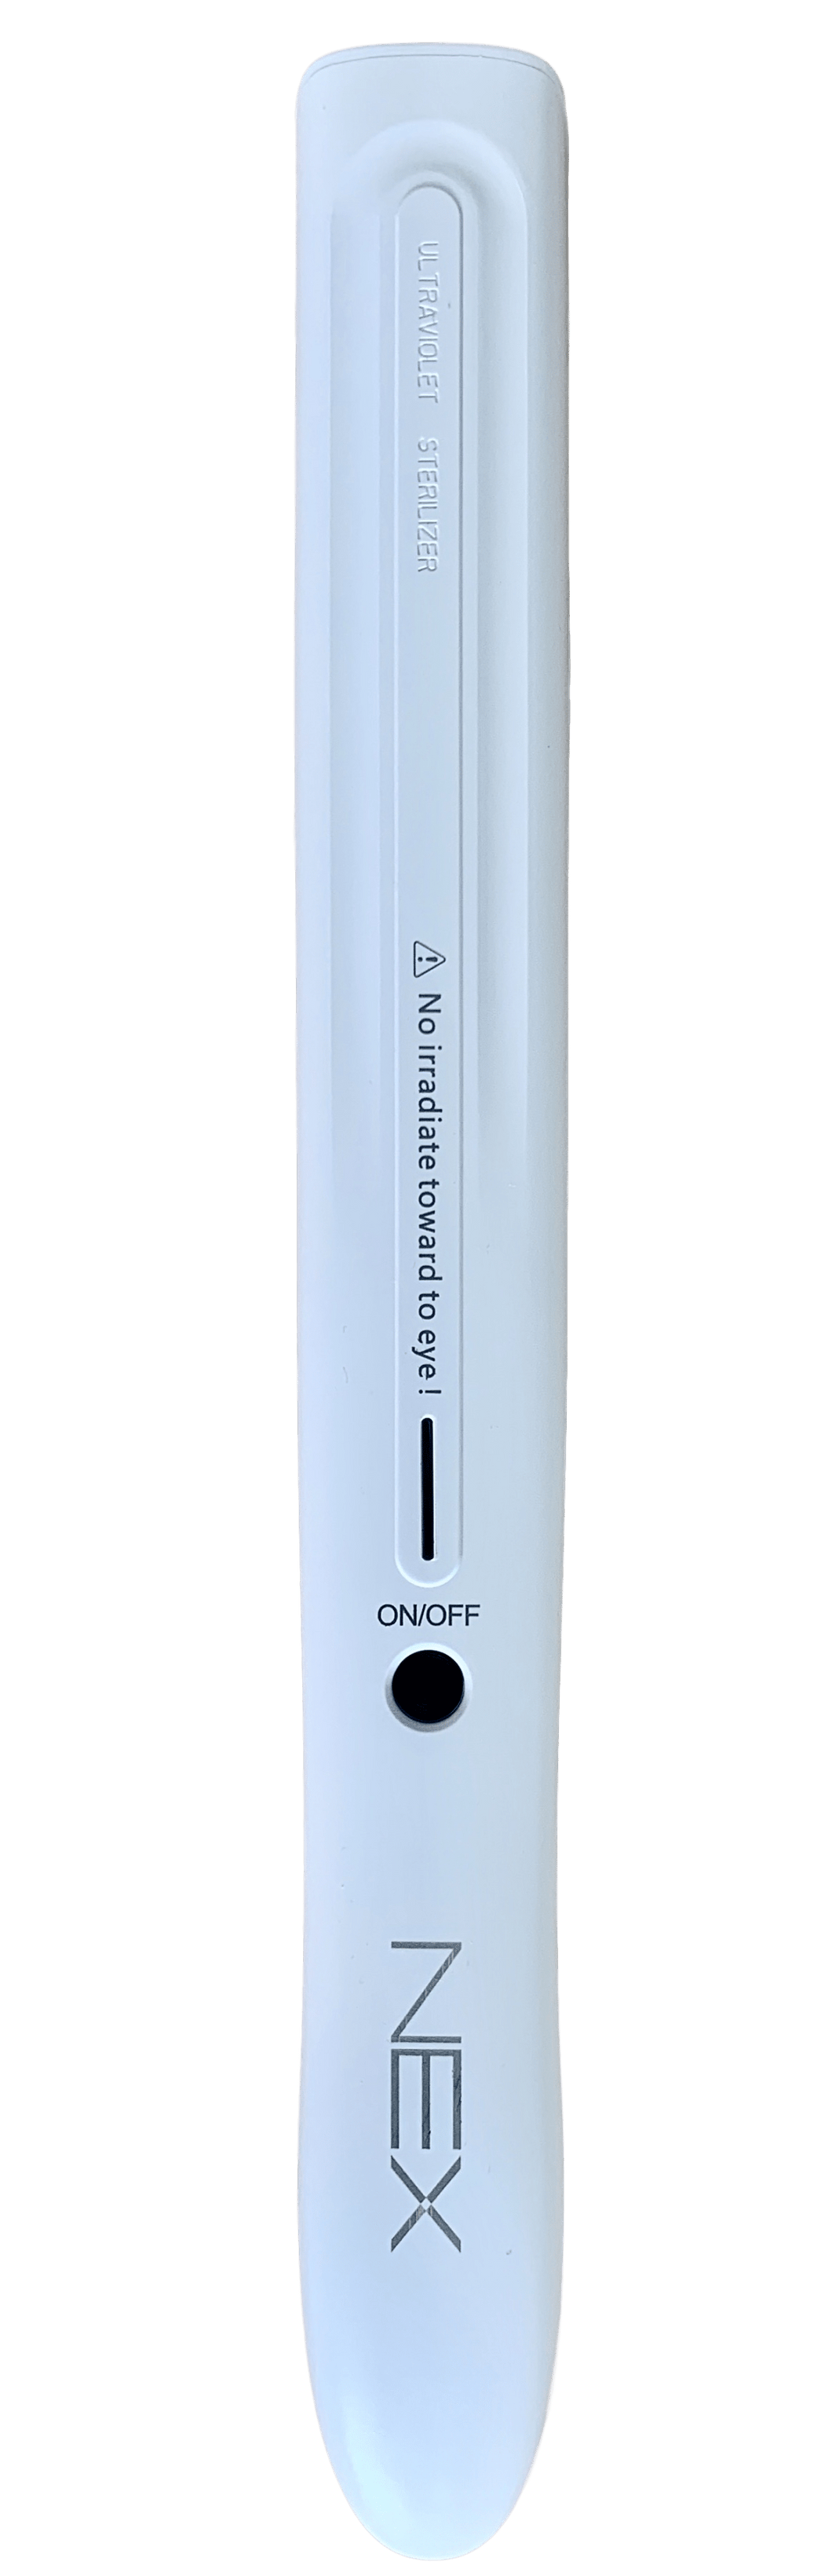 Esterilizador portátil con lámpara UV Nex - Modelo NxU2